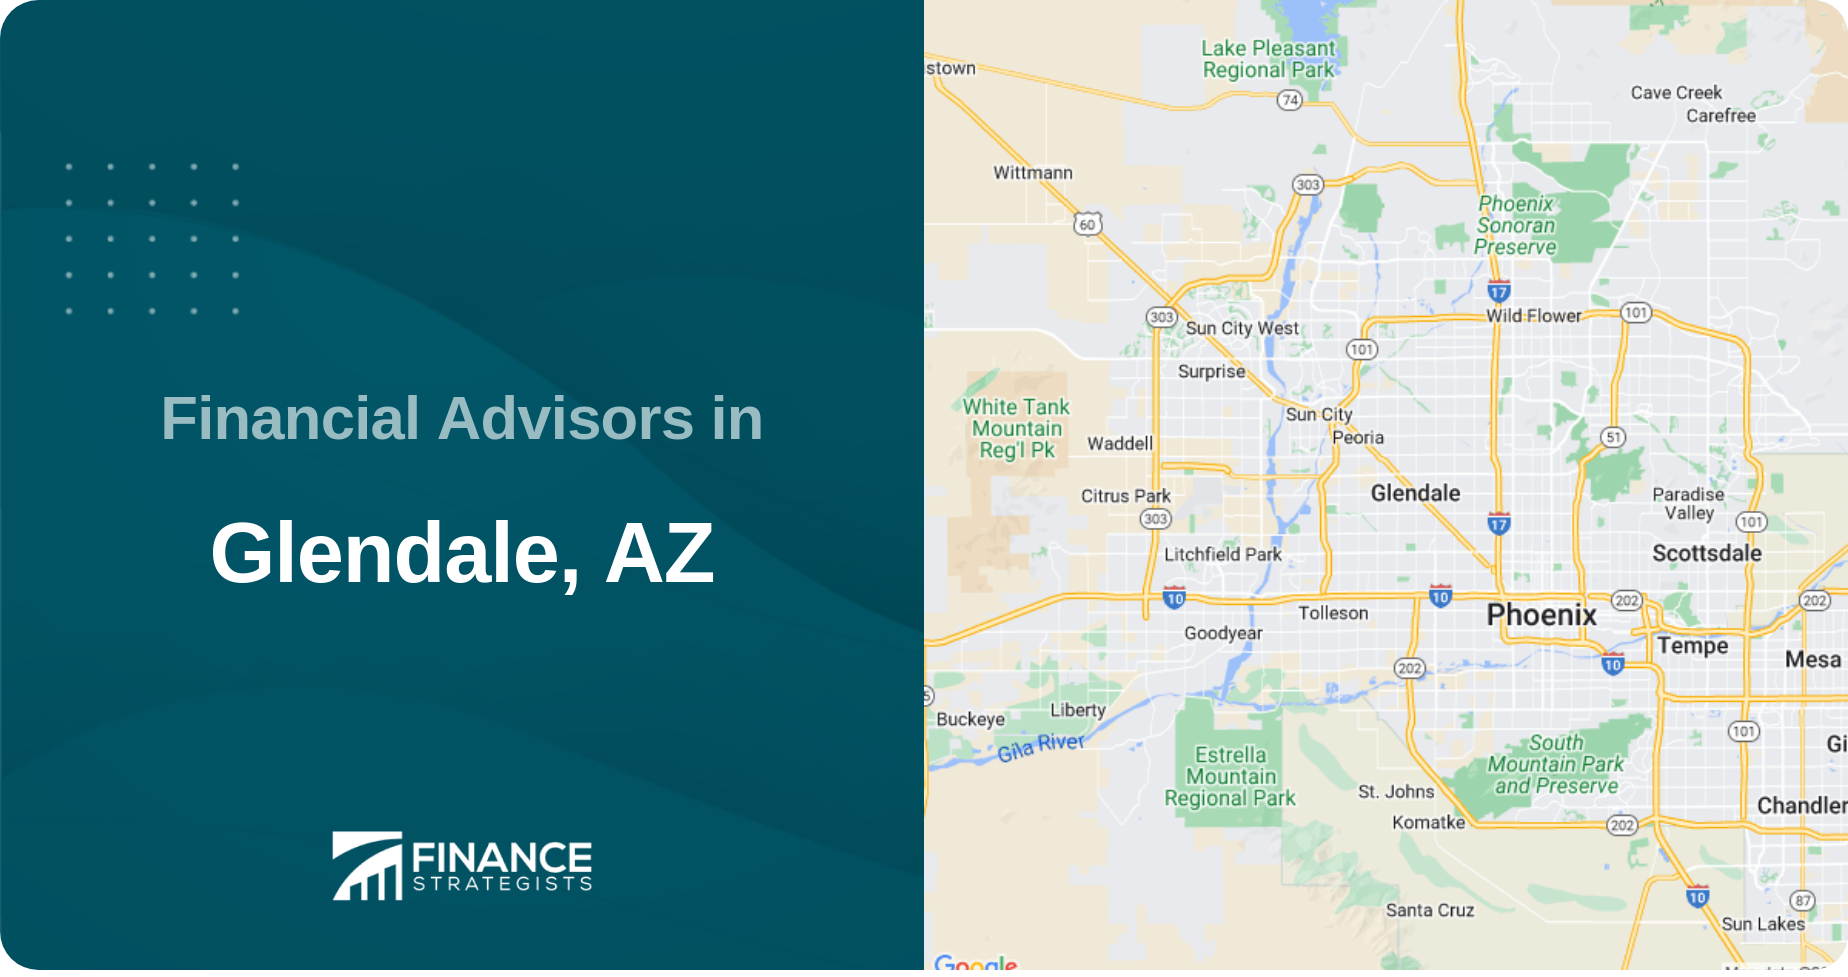 Financial Advisors in Glendale, AZ